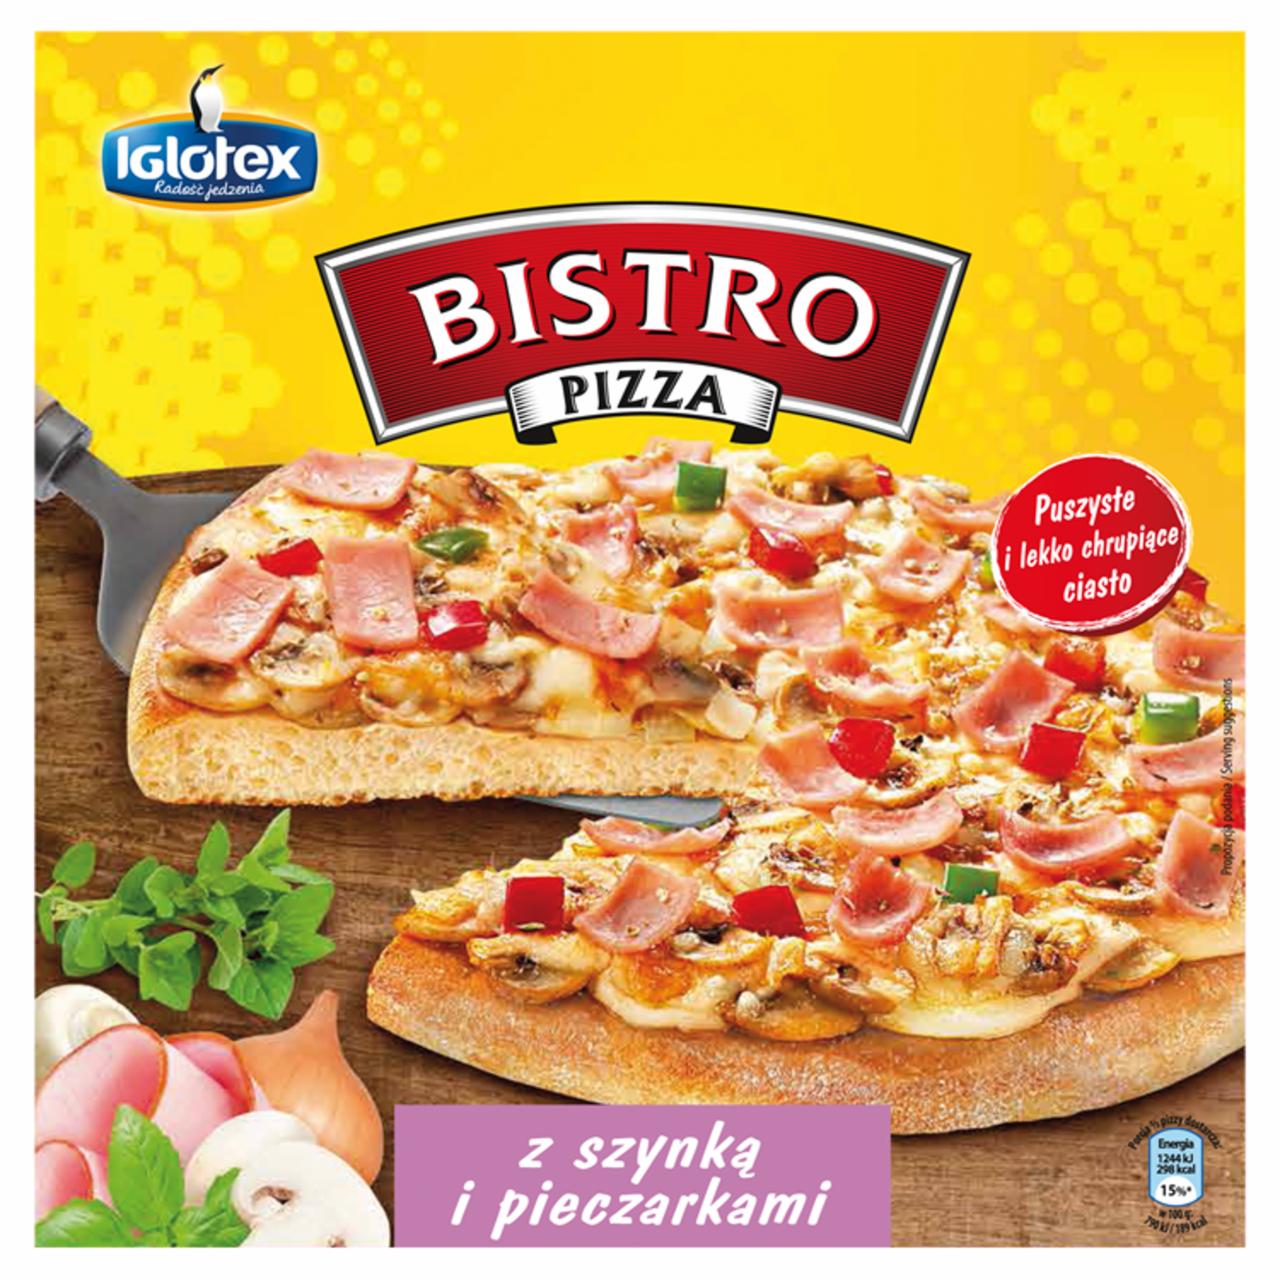 Zdjęcia - Bistro Pizza z szynką i pieczarkami 315 g